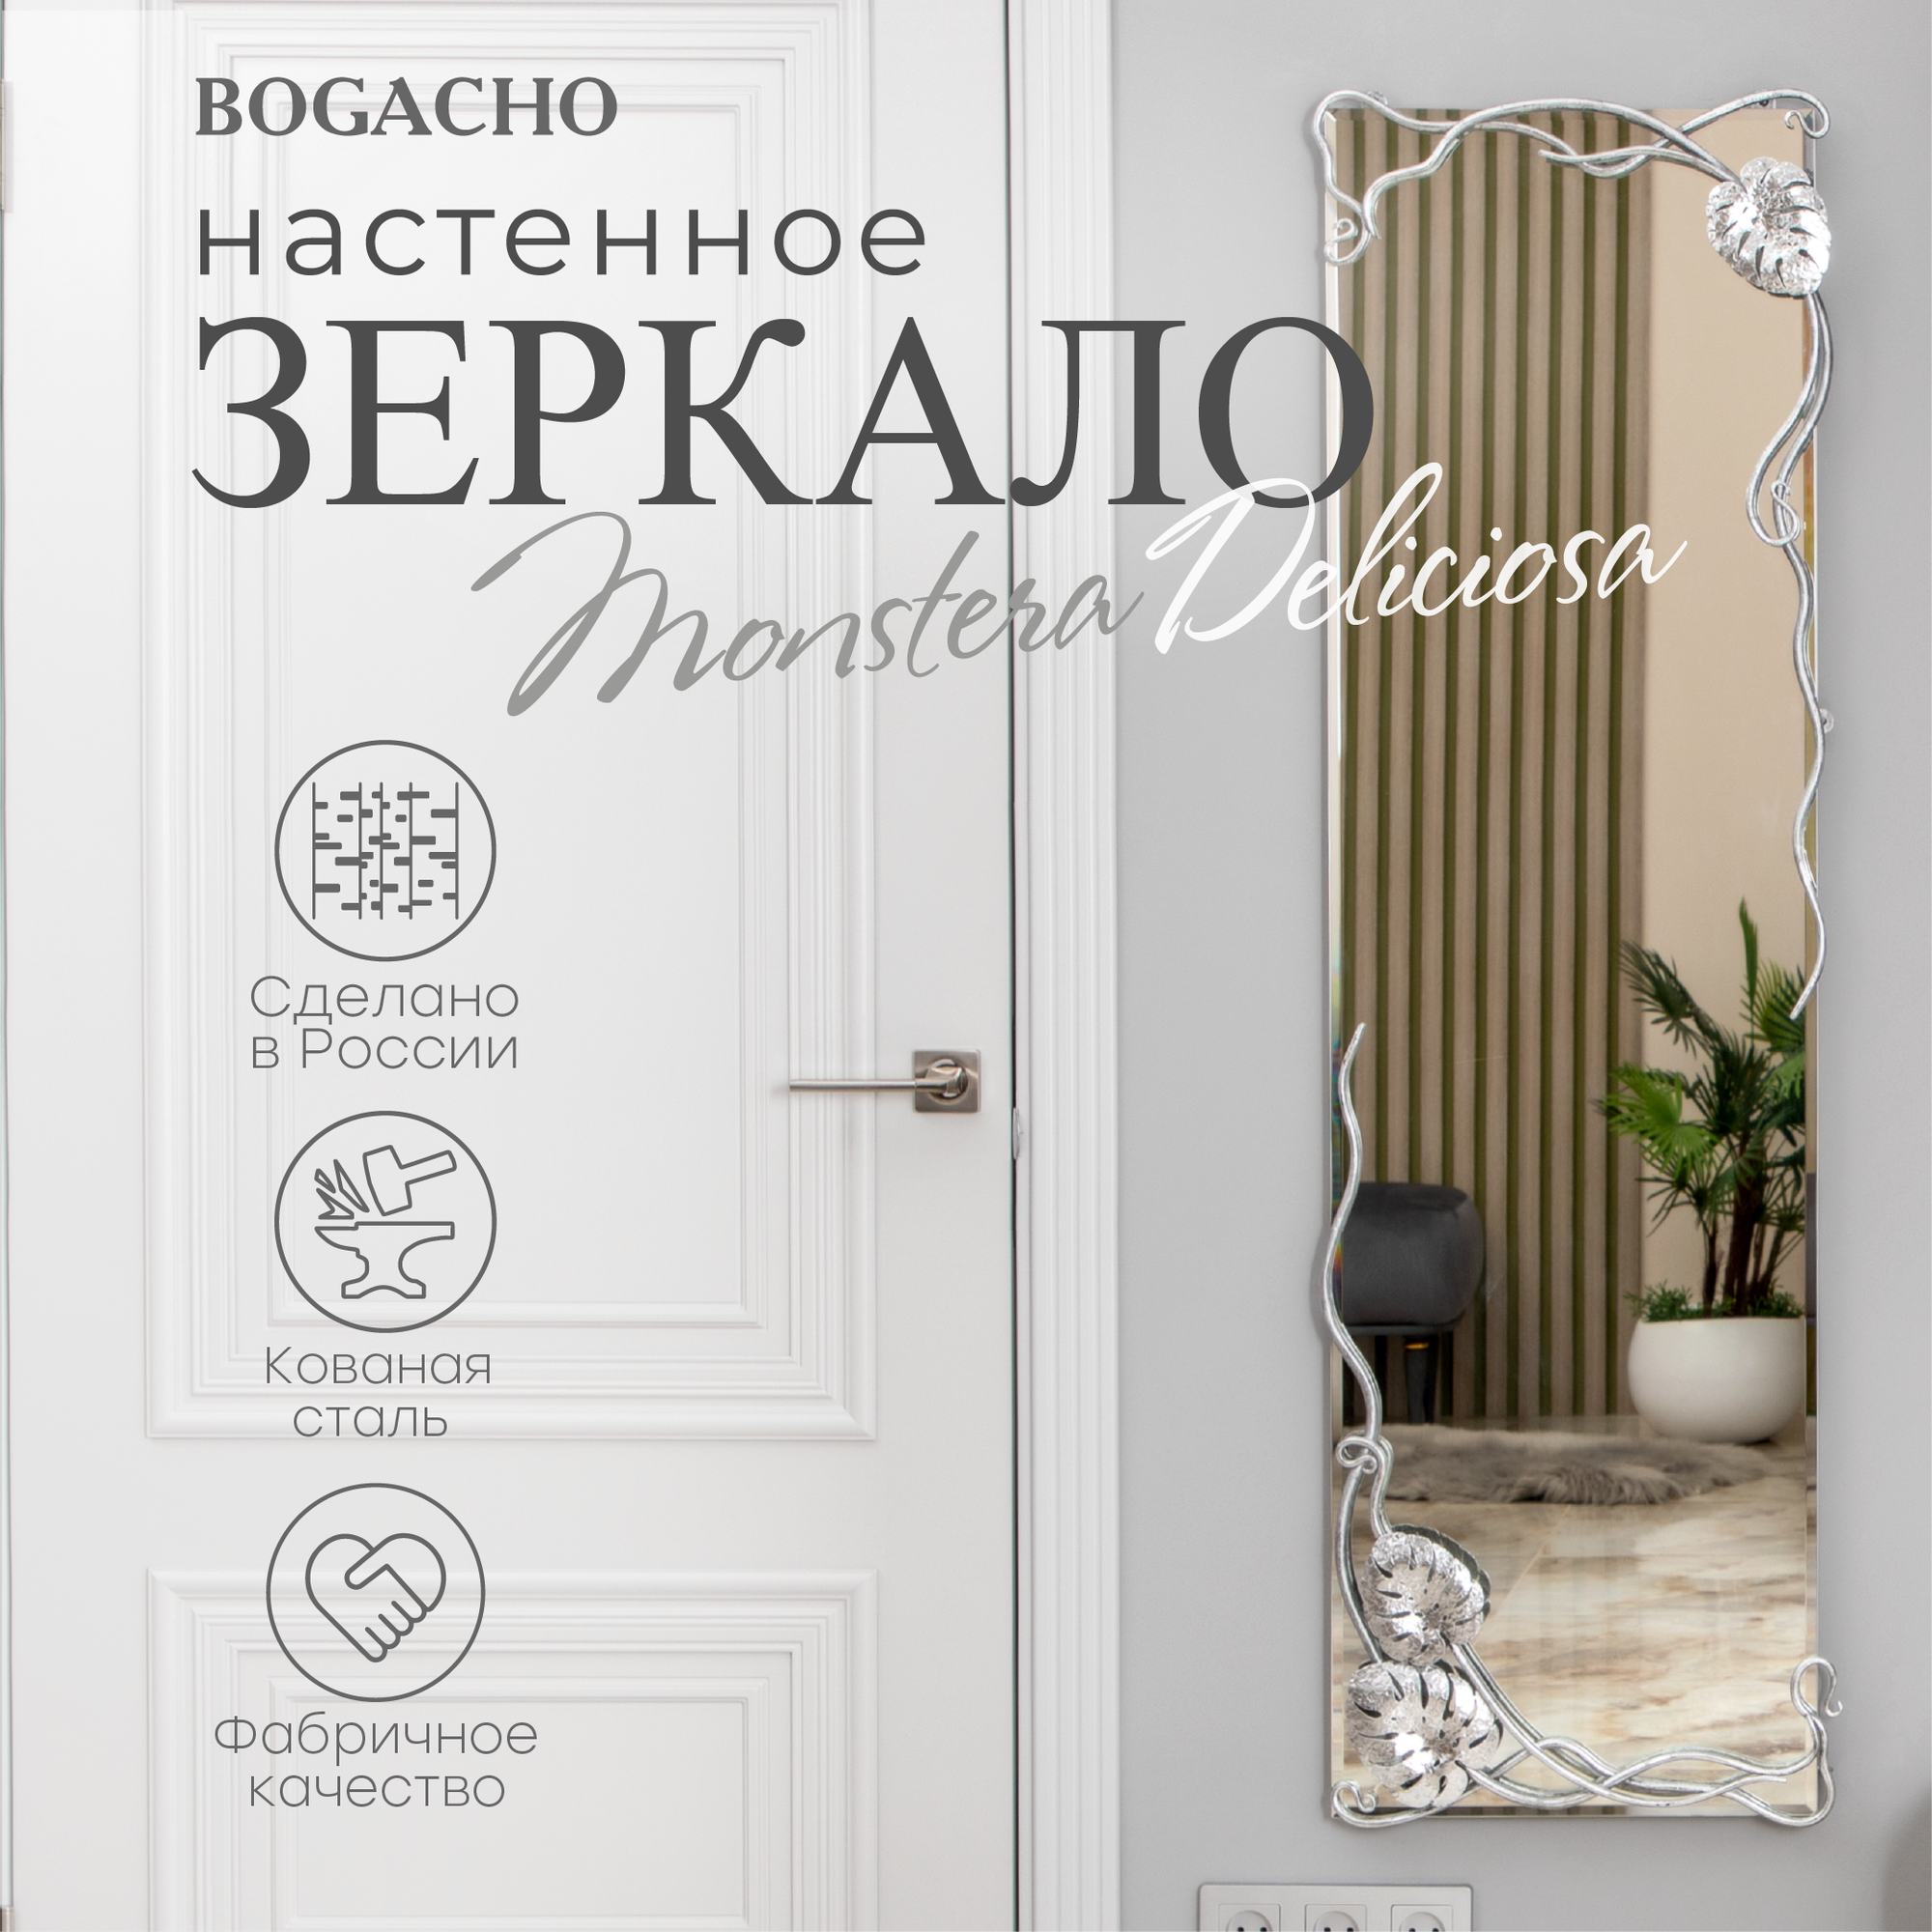 Зеркало настенное Bogacho Monstera Deliciosa прямоугольное с коваными элемента серебристого цвета